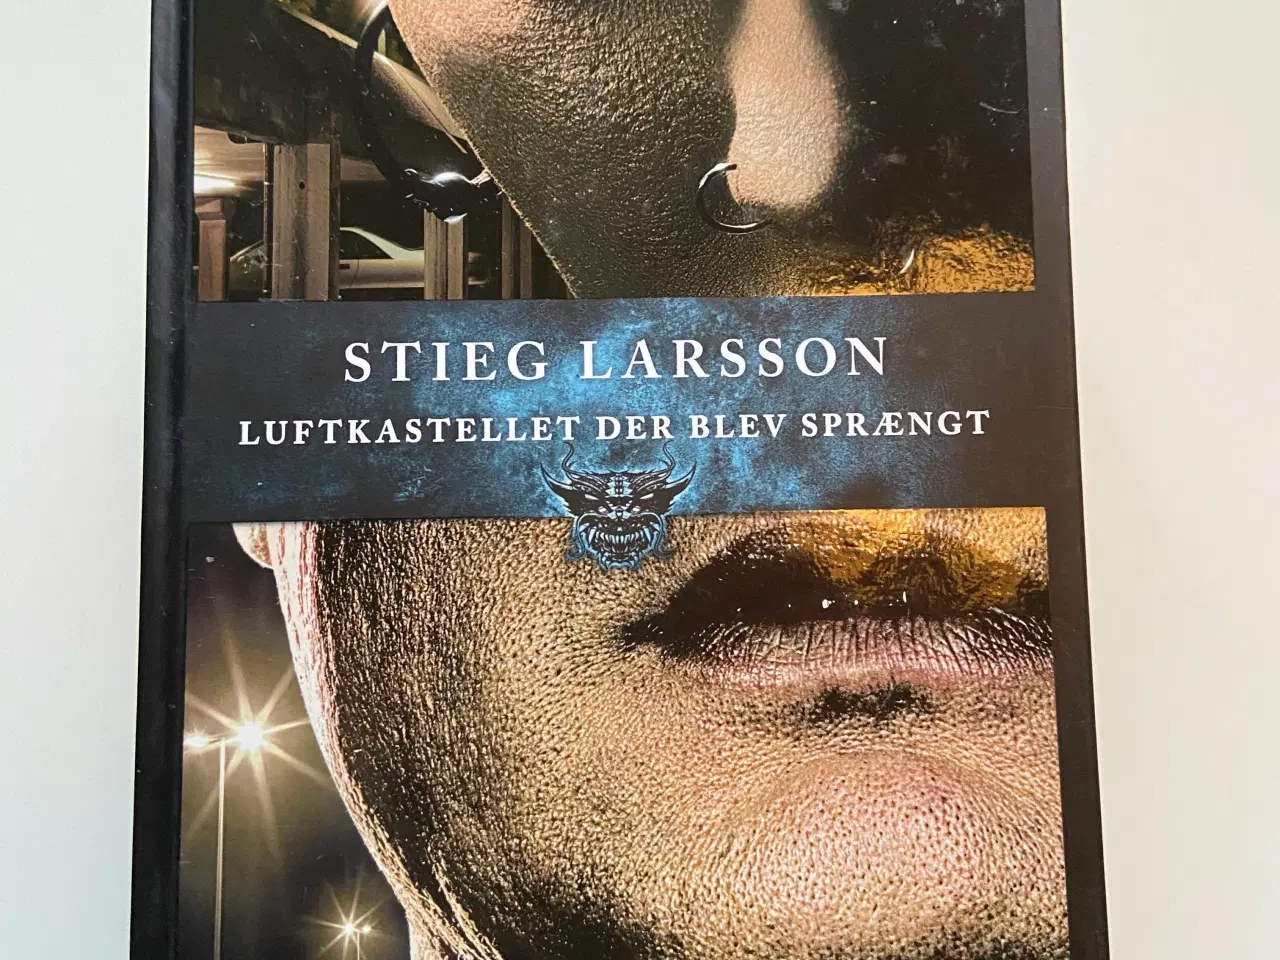 Billede 2 - 3 Stieg Larsson bøger 40,- samlet